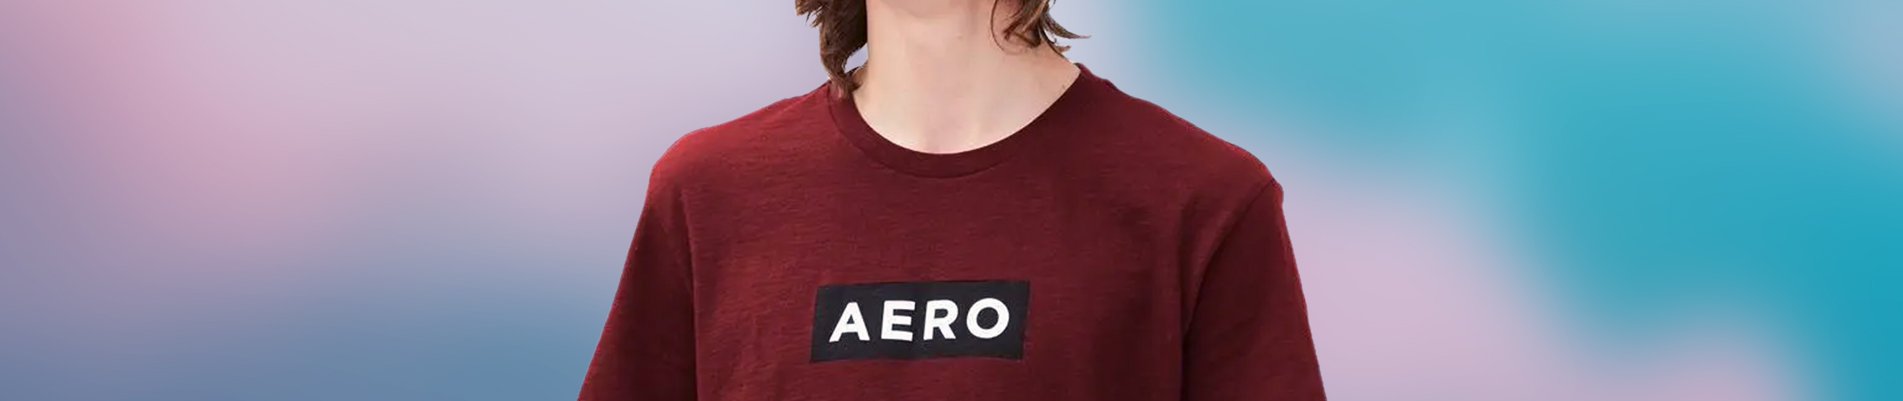 background-camiseta-aeropostale